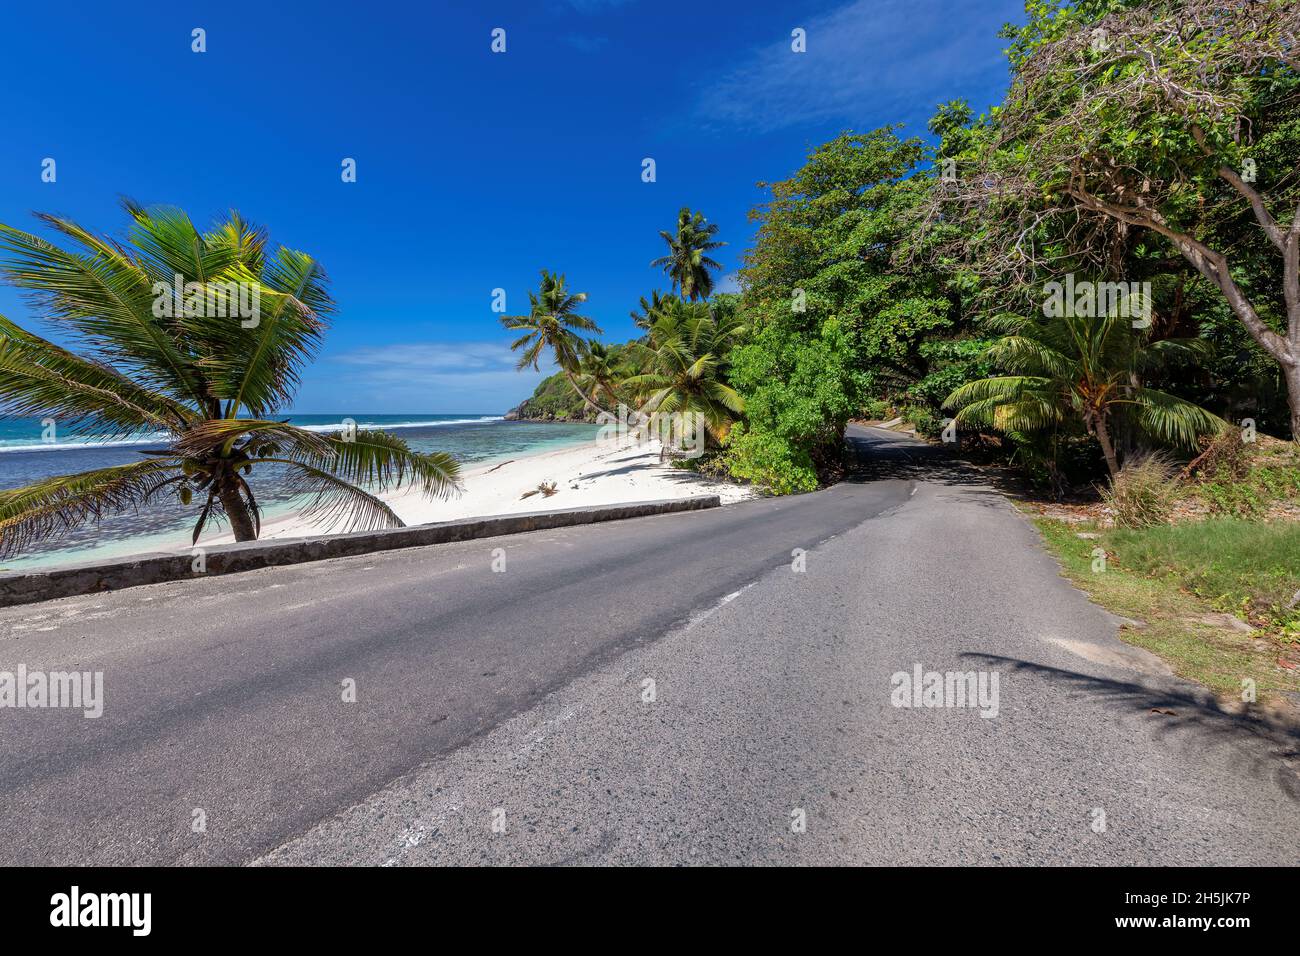 Carretera de playa en isla tropical Foto de stock